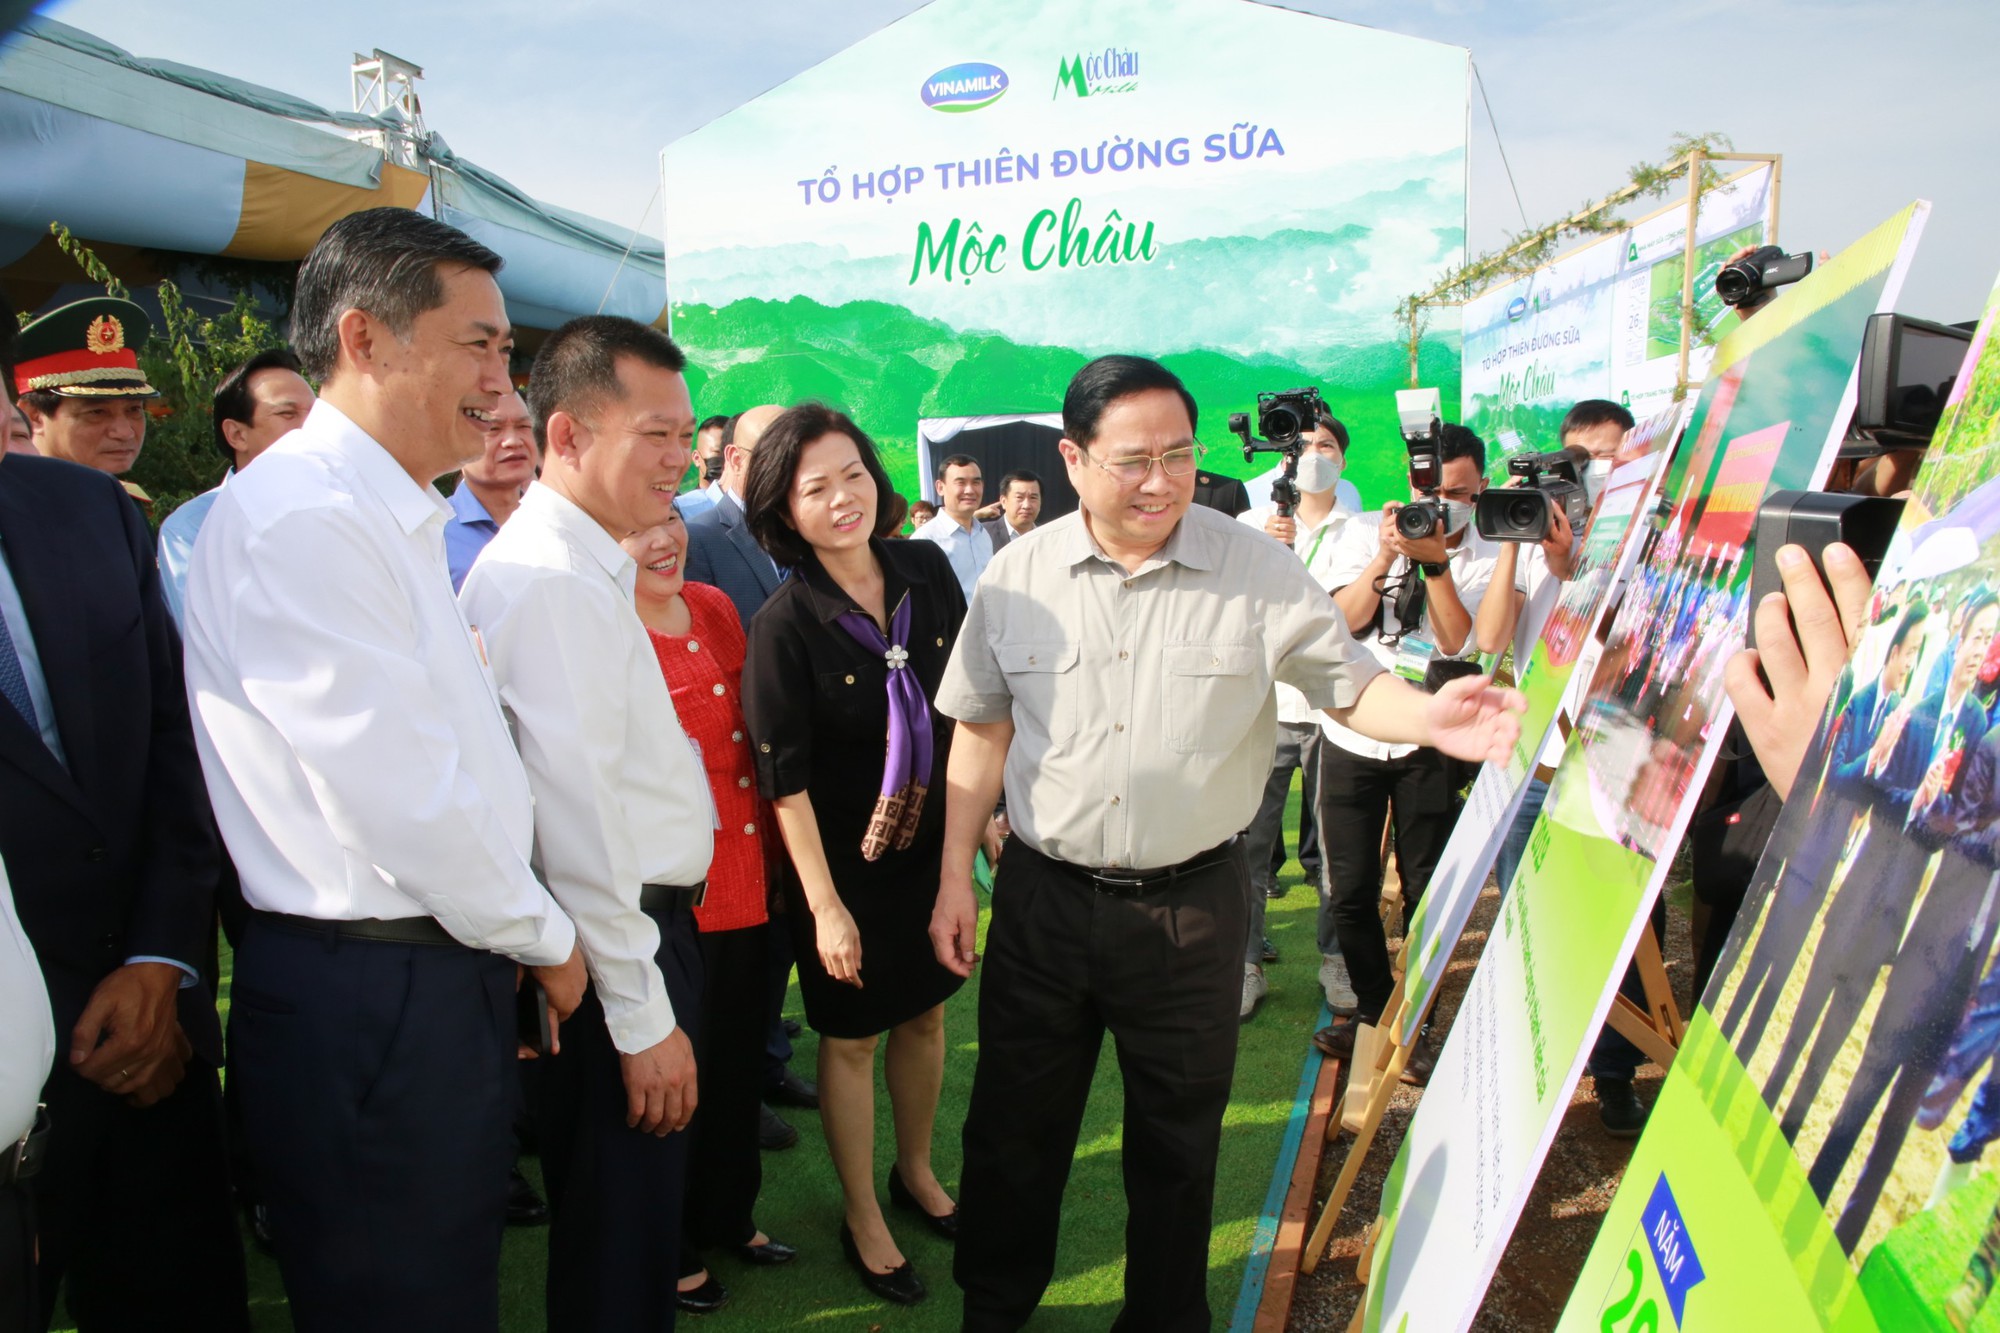 Thủ tướng Phạm Minh Chính dự Lễ khởi công Dự án Tổ hợp thiên đường sữa Mộc Châu - Ảnh 6.